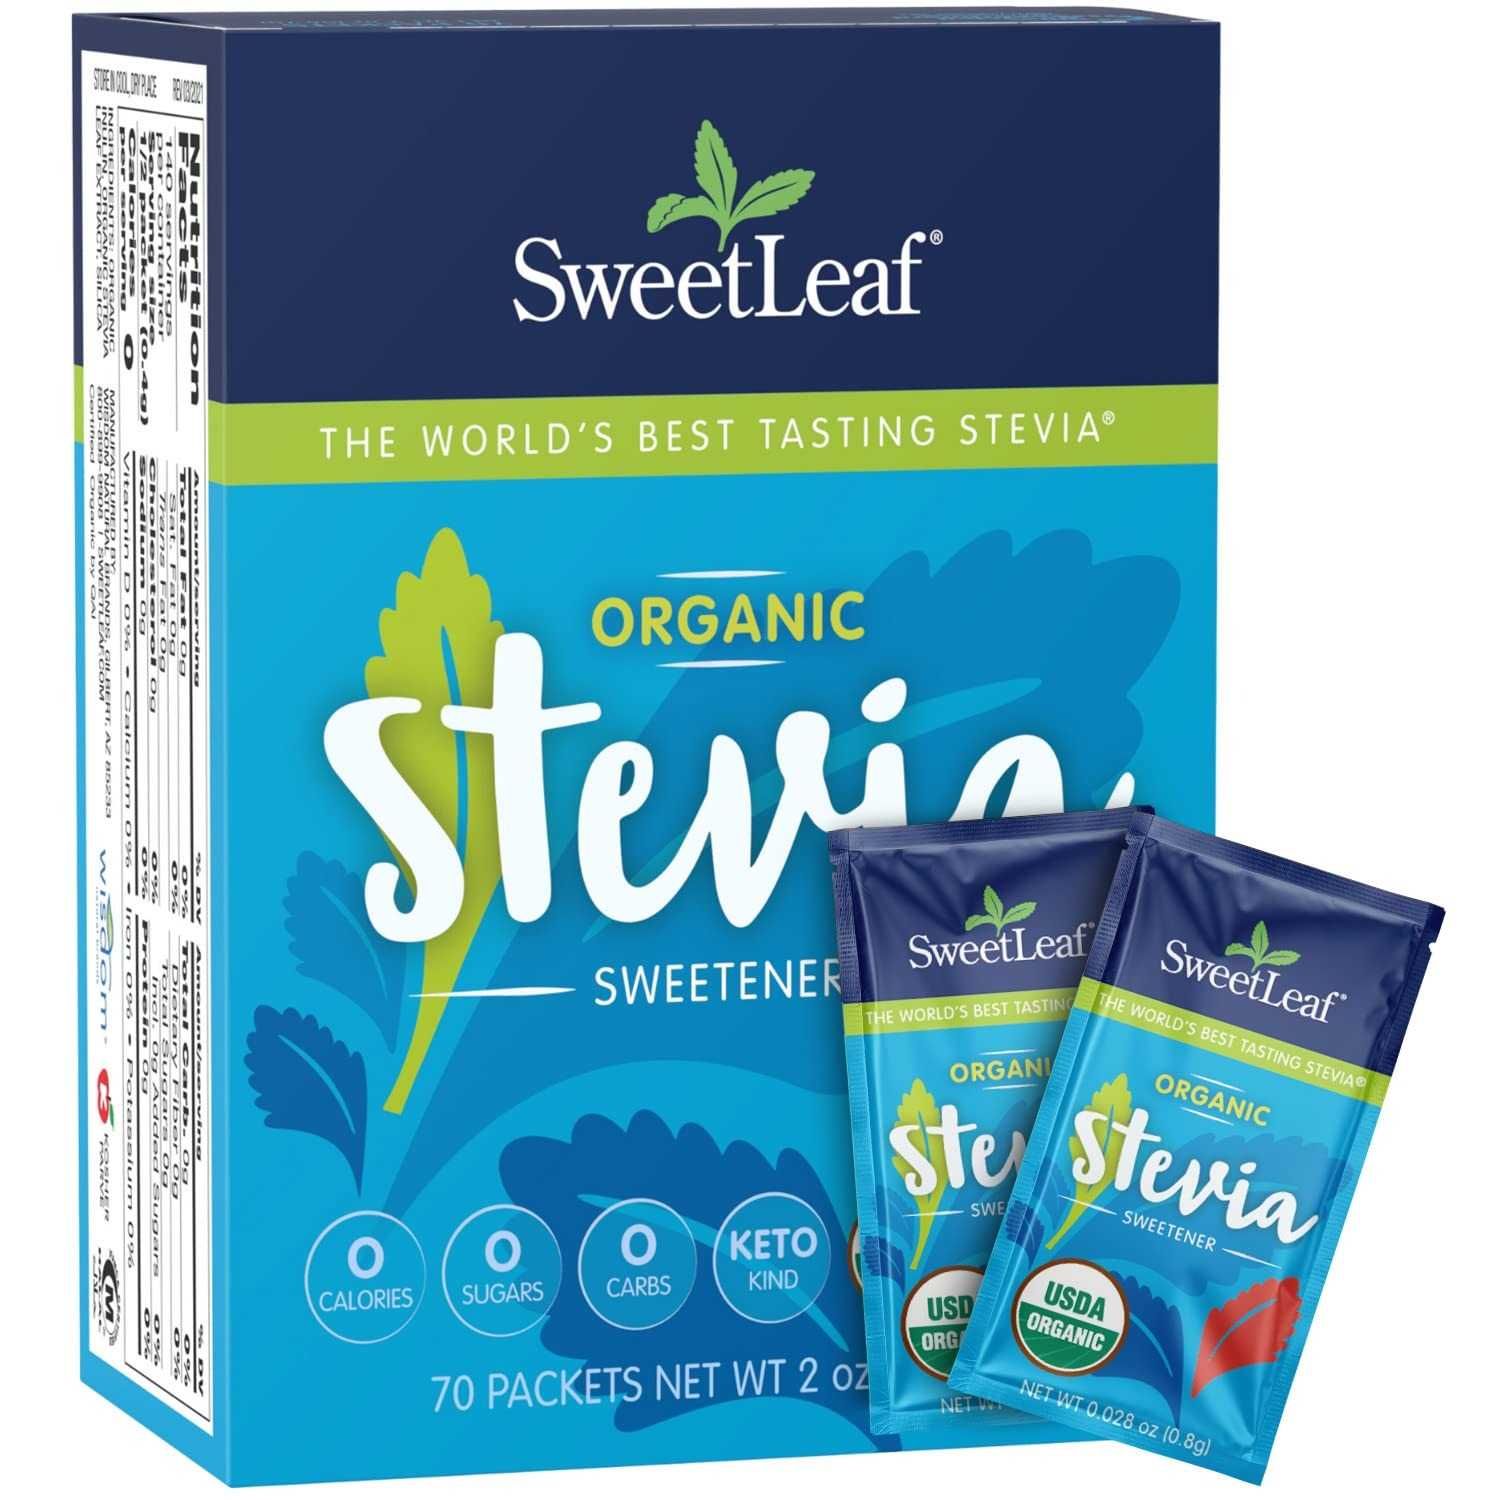 Sweet Leaf Stevia oрганическая стевия подсластитель 70 пакетиков 56,7г